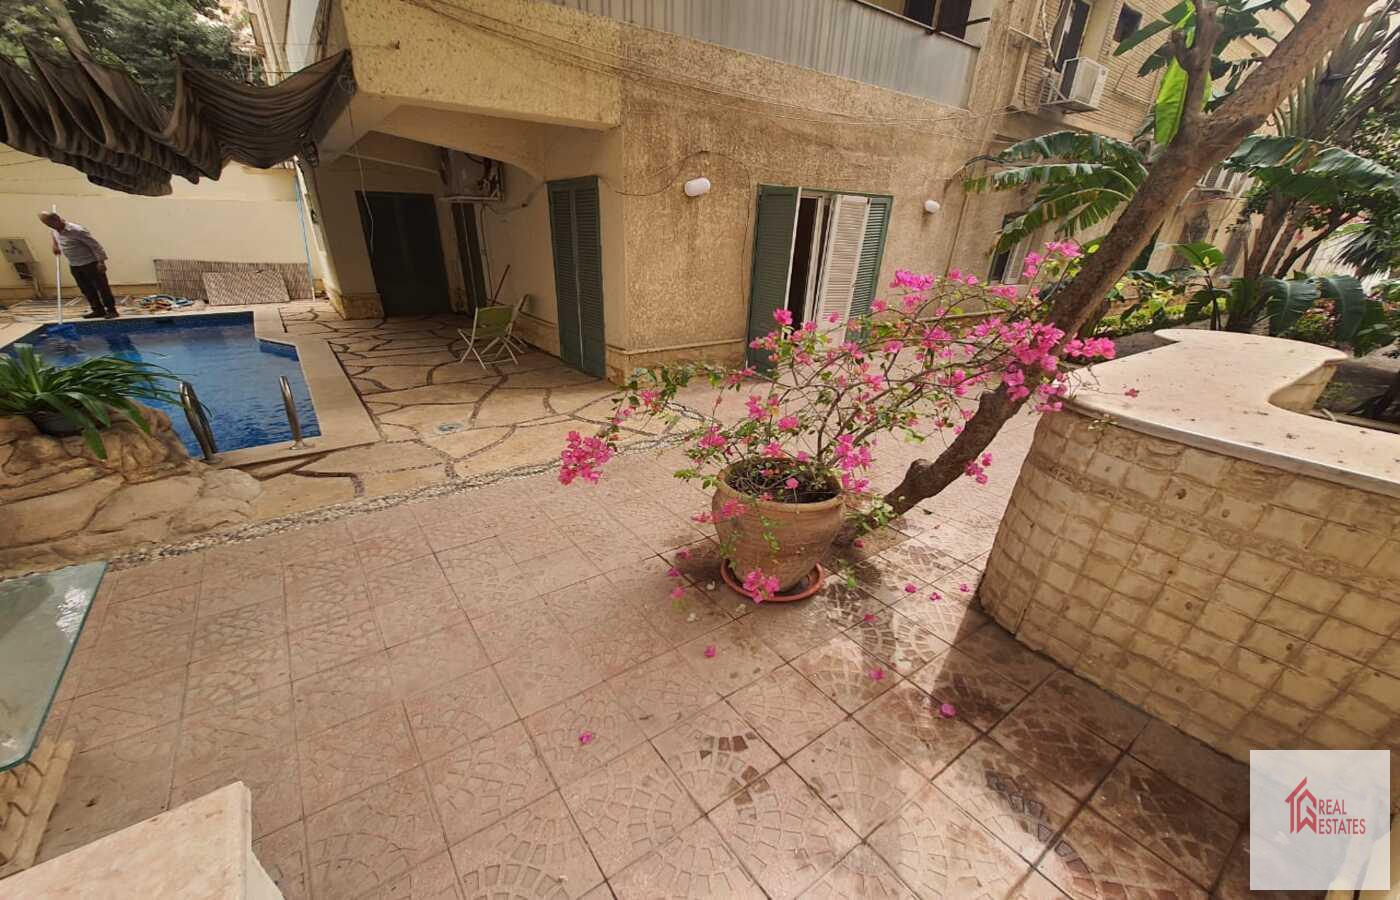 Rez-de-chaussée avec piscine privée à louer à Sarayat El Maadi - Le Caire - Egypte